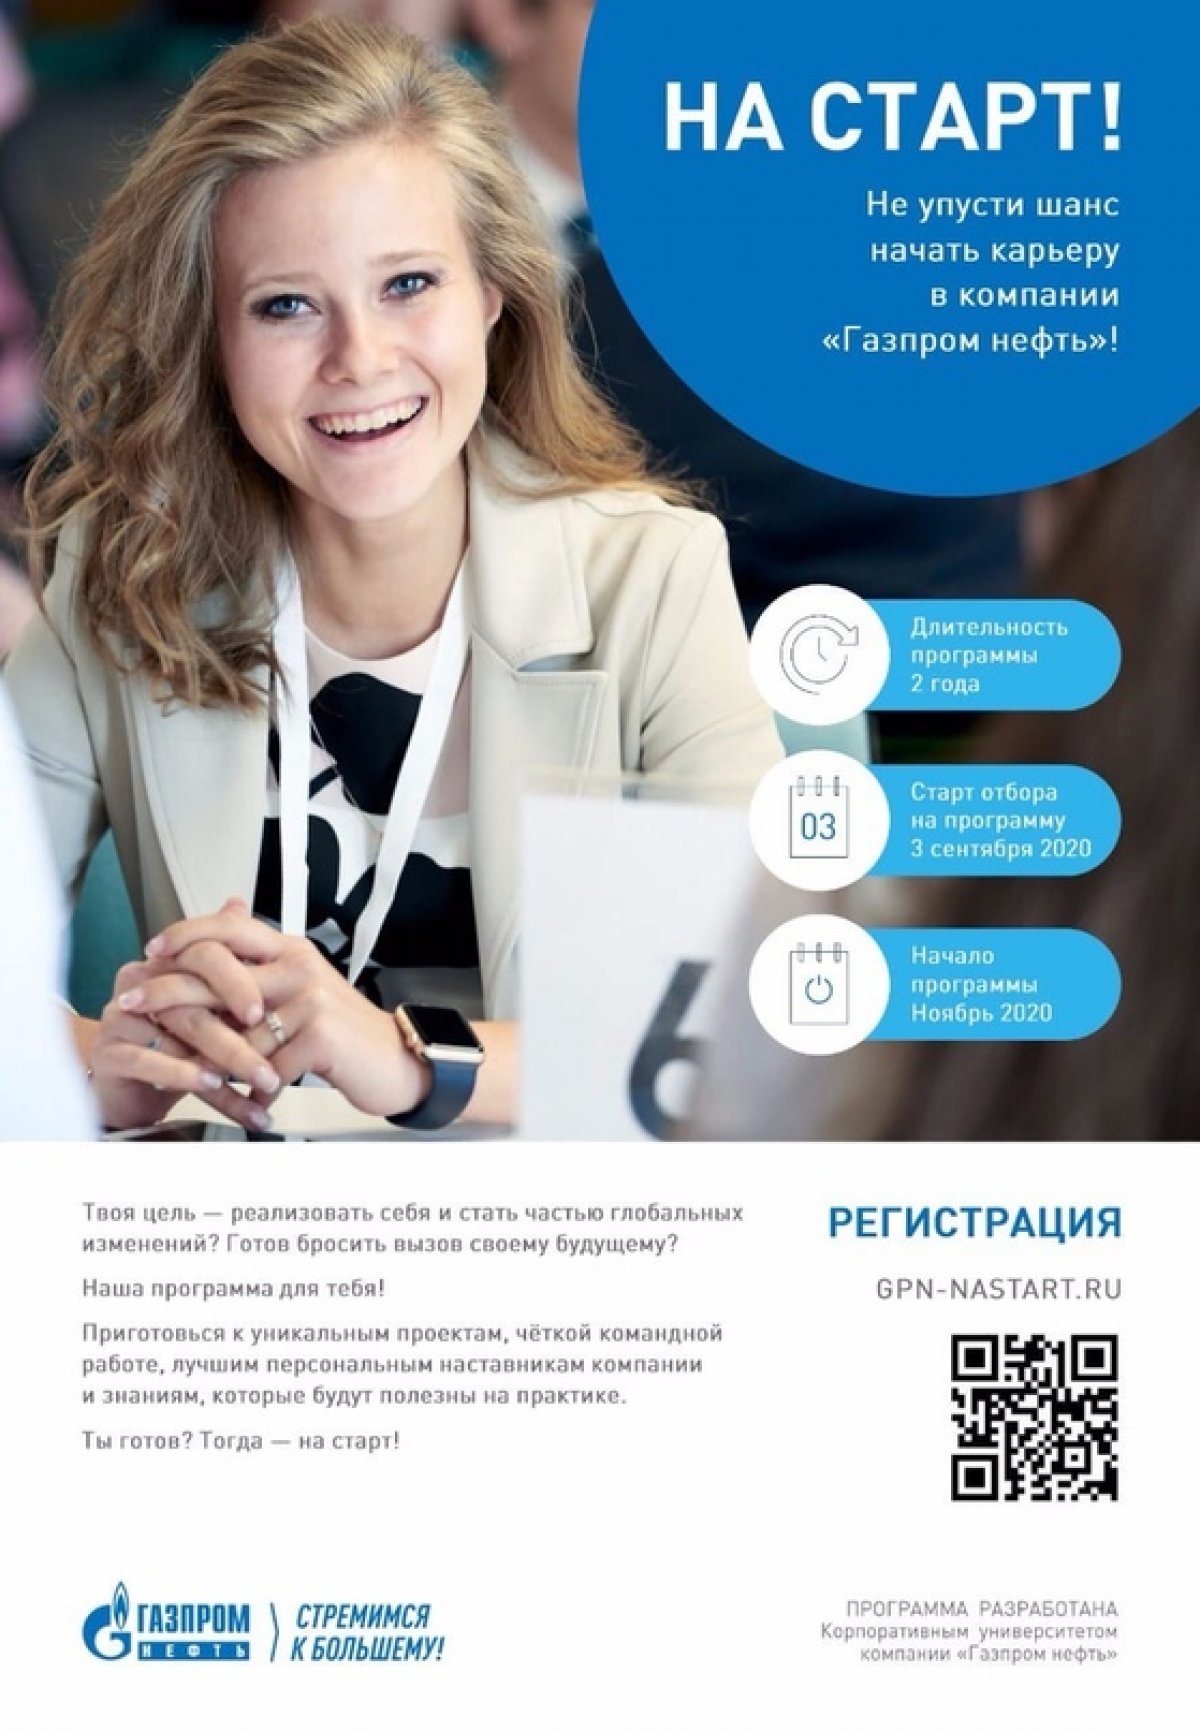 ПАО «Газпром нефть» проводит конкурс на программу развития молодых специалистов «На старт!».